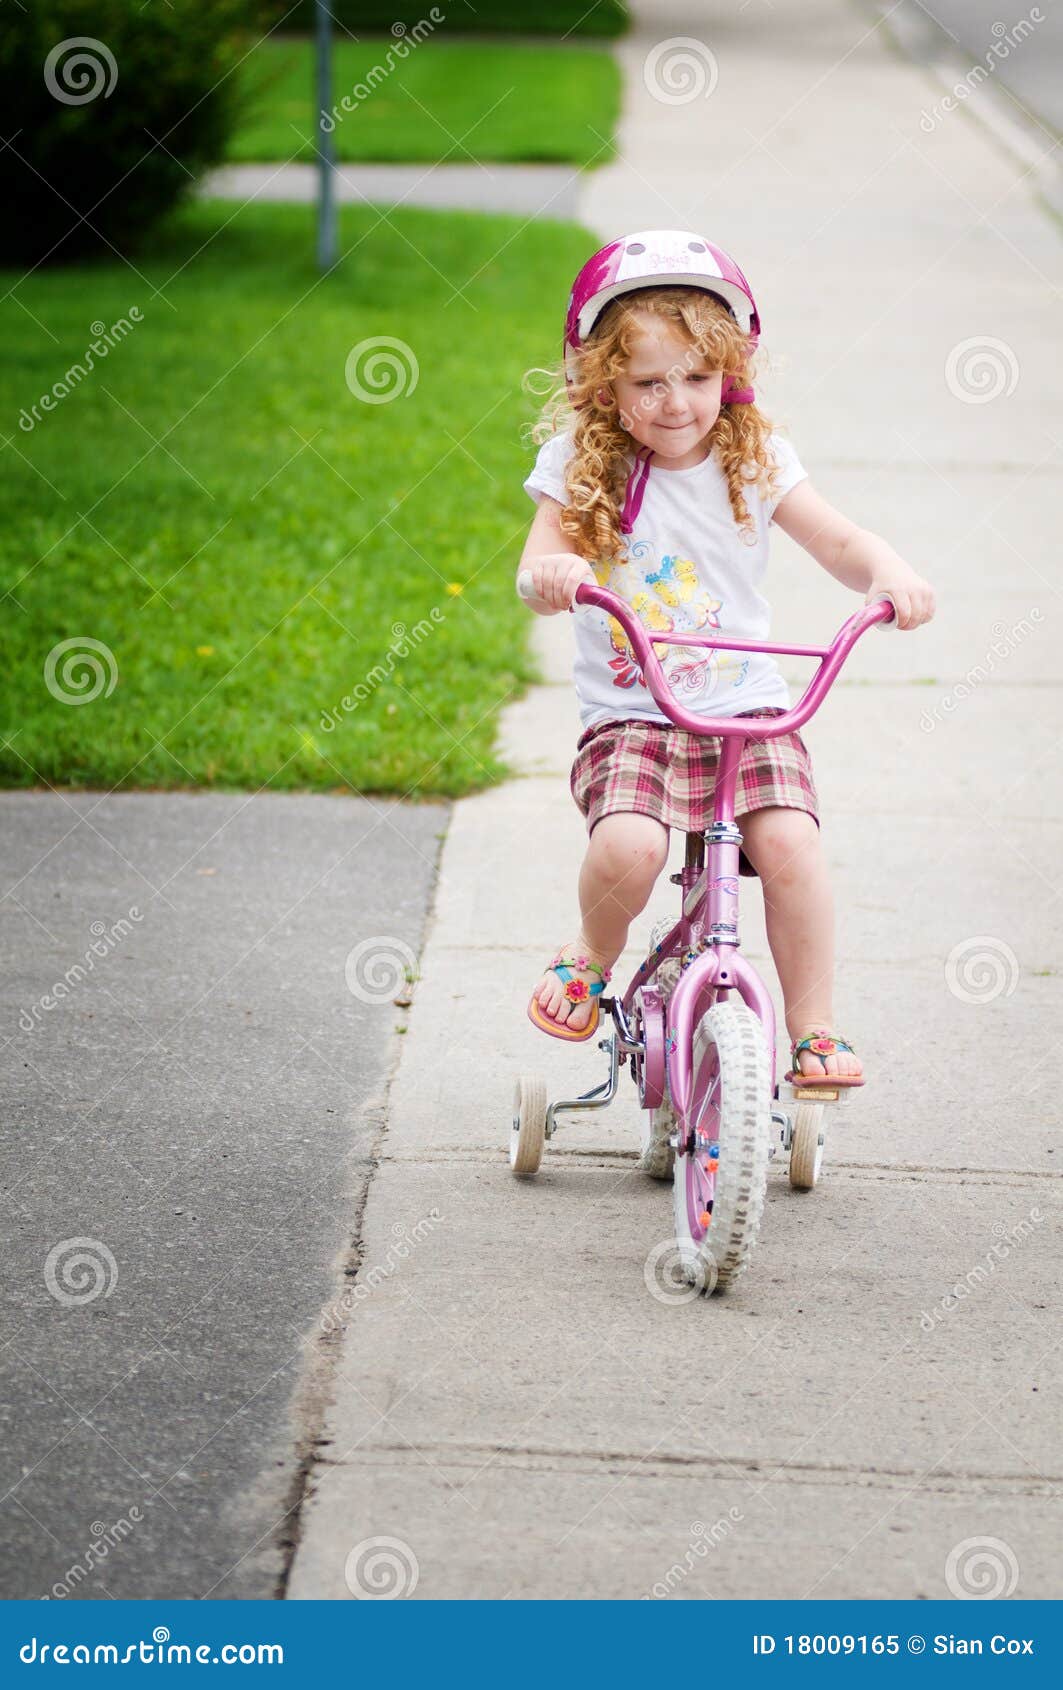 Cute girls riding bikes